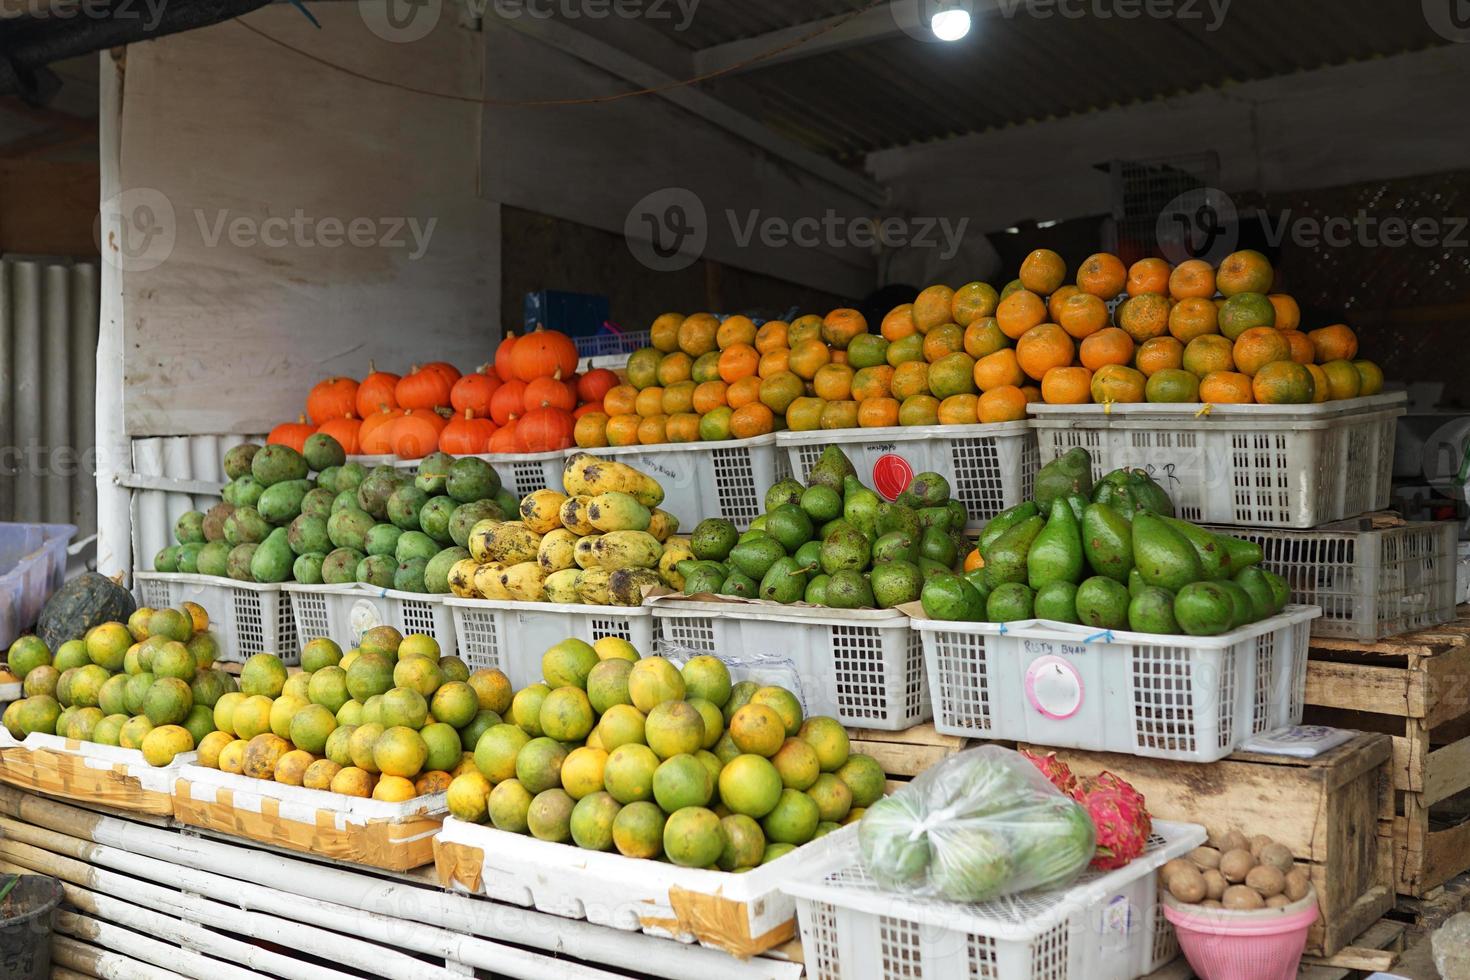 traditionell frukt affär med Allt typer av mängd i de korg. frukt marknadsföra bakgrund foto